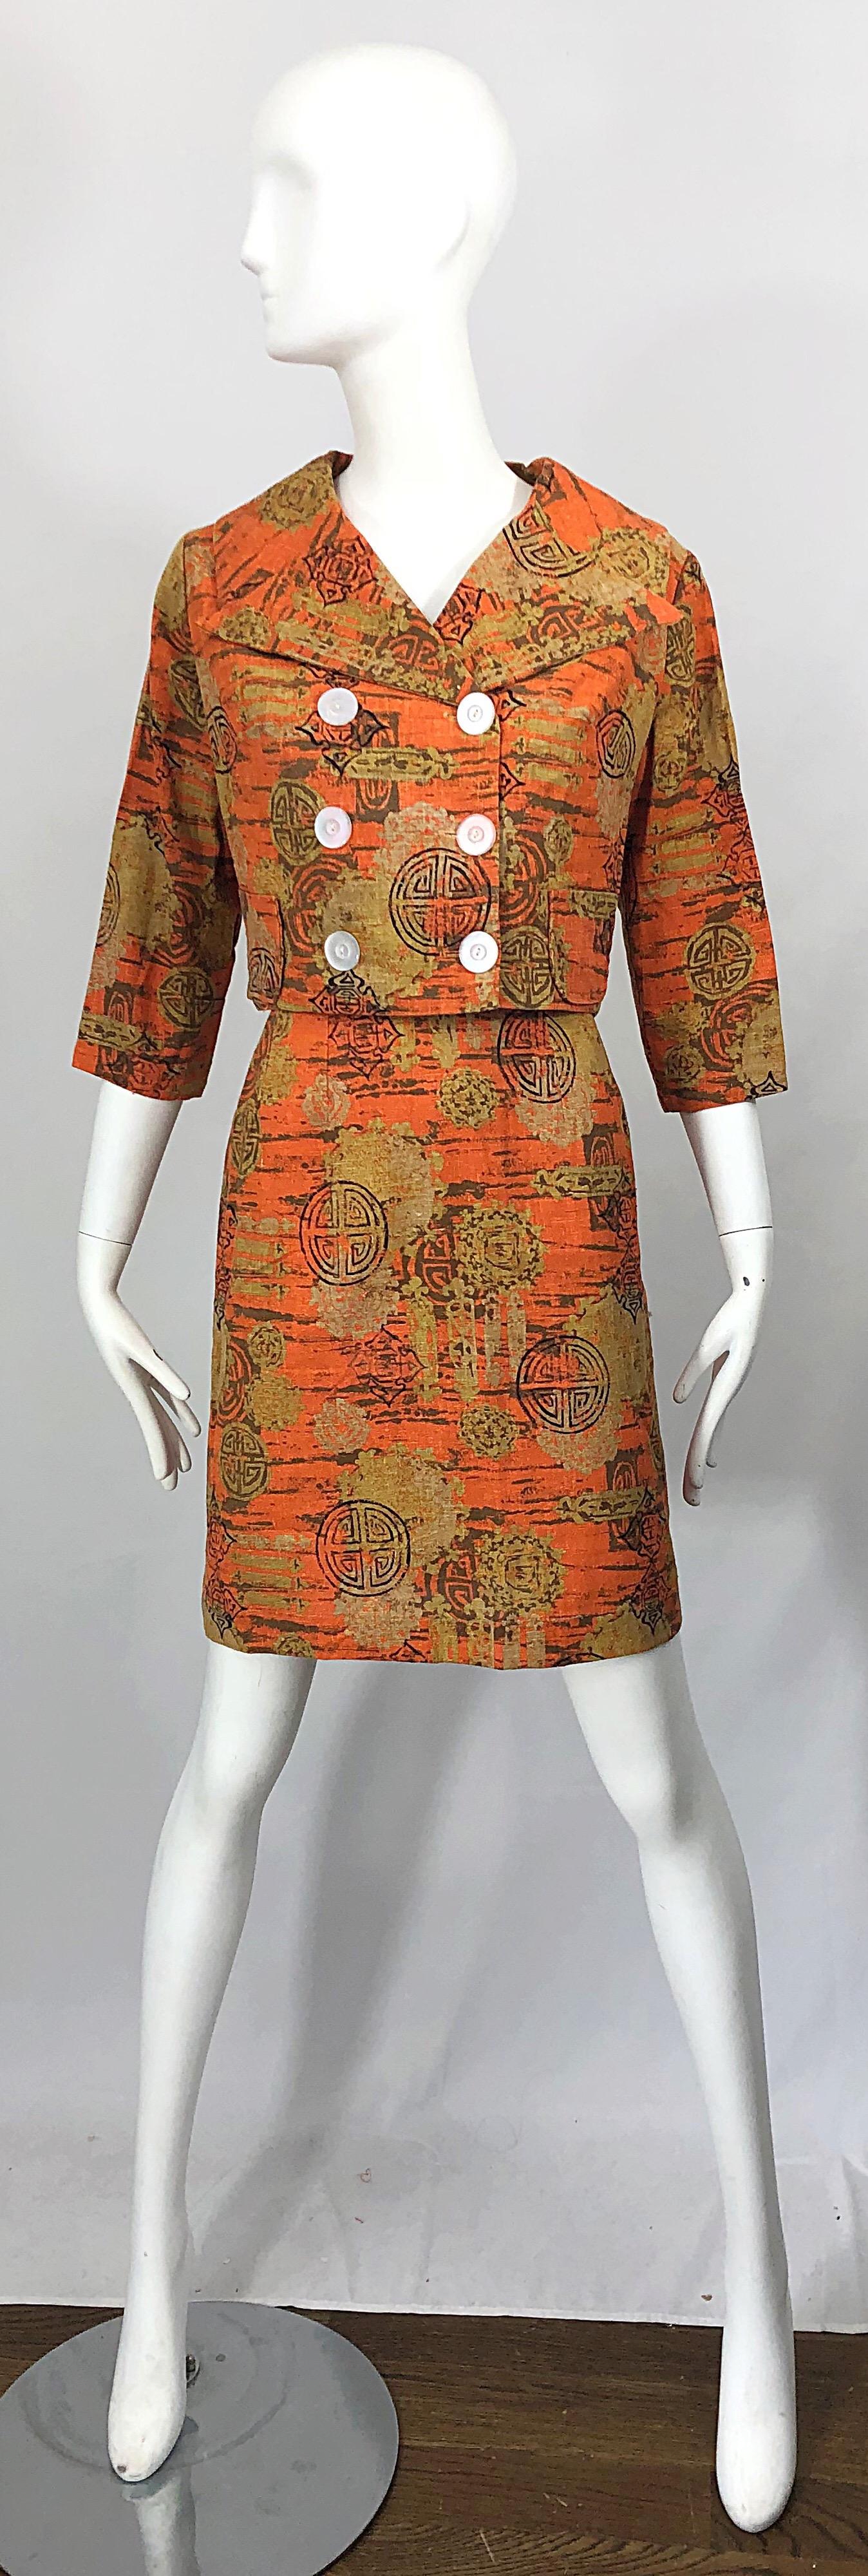 Schicker 1960er Jahre abstrakter asiatischer Batikdruck Leinenrock Anzug! Durchgehend in warmen Farben von gebranntem Orange und Hellbraun gehalten. Die Jacke im Pillbox-Stil ist doppelreihig, tailliert und hat 3/4-Ärmel. Durchsichtige Knöpfe und